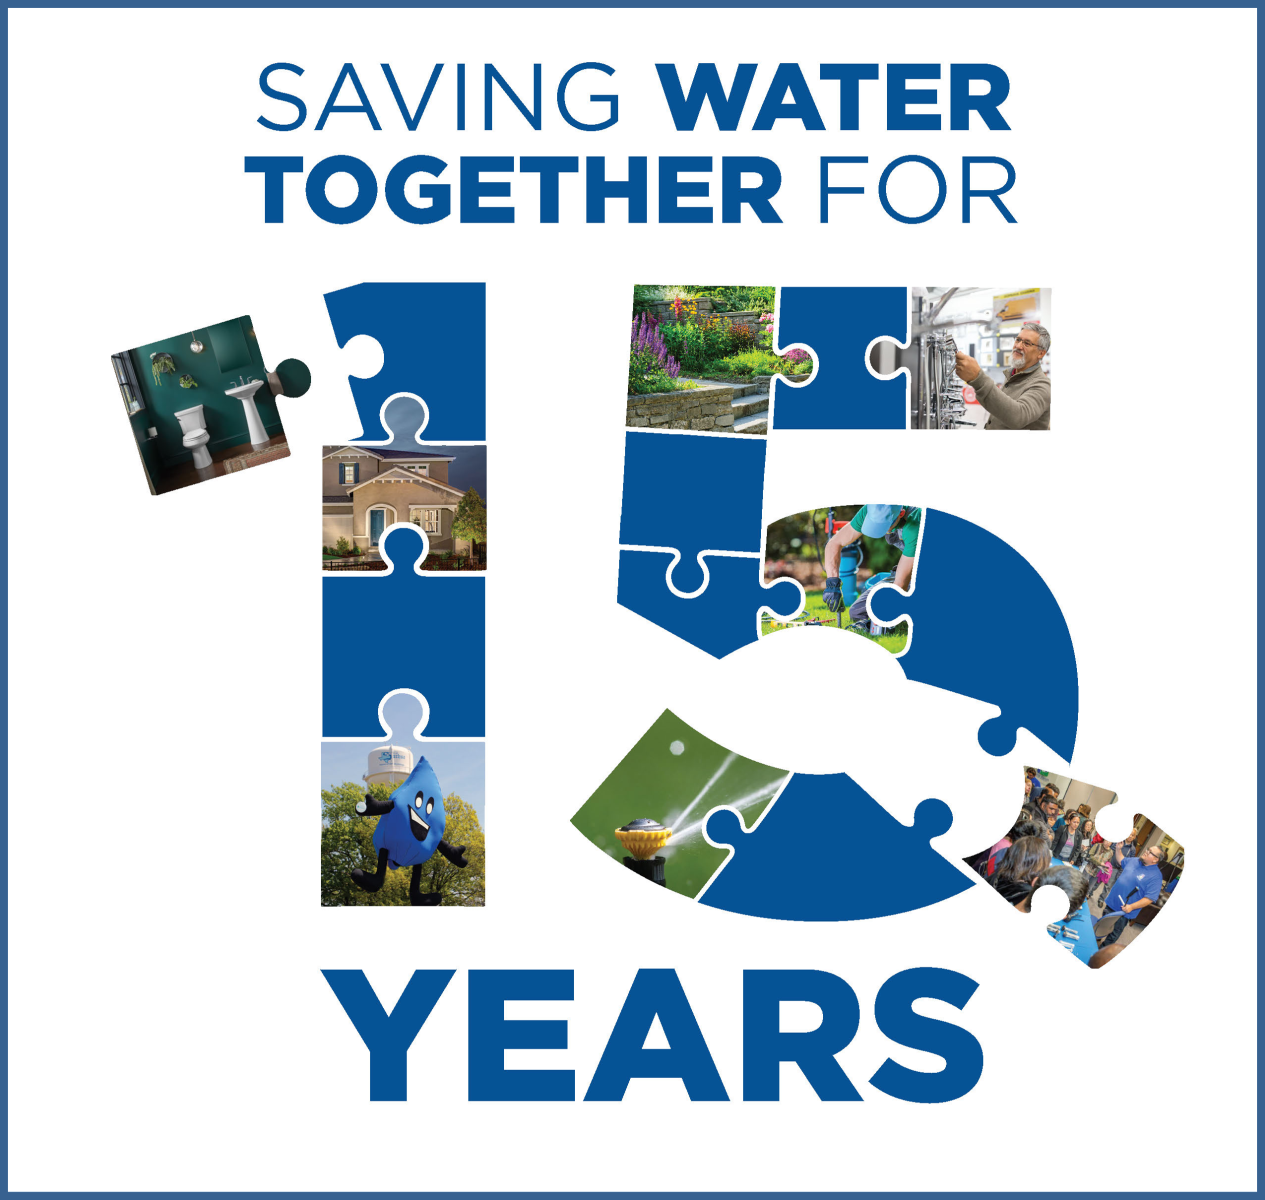 15 Years of WaterSense